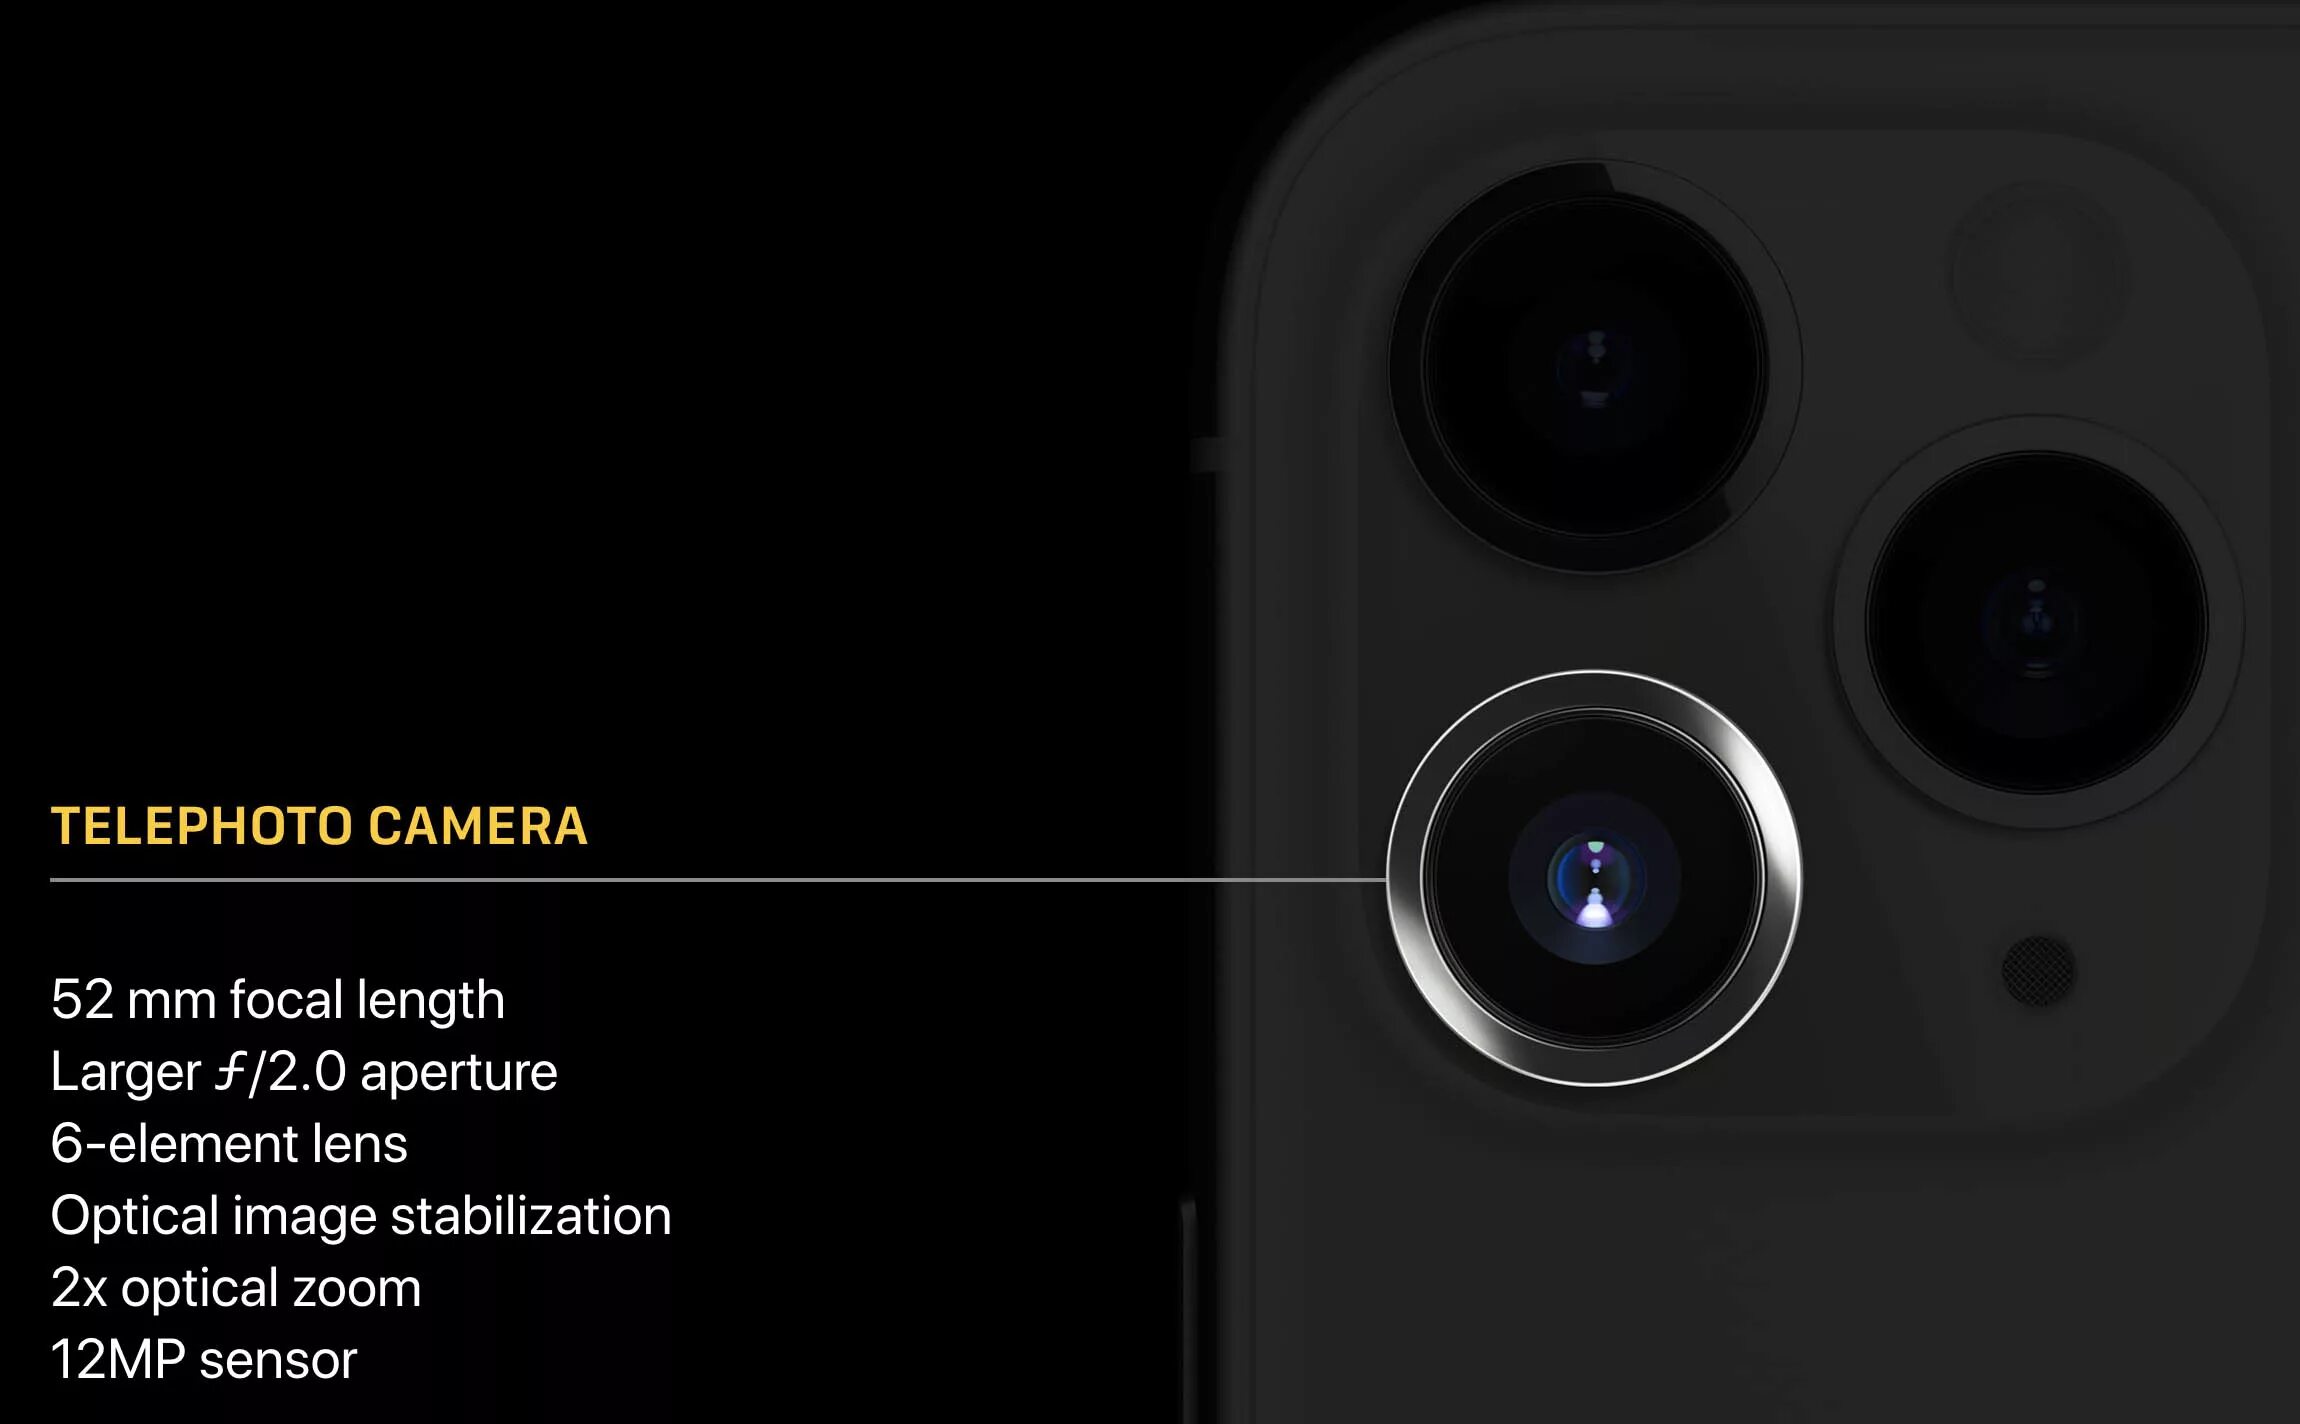 Телефото камера 11 Pro Max. Iphone 11 Pro камера. Apple iphone 13 Pro камера МП. Iphone 11 камера мегапикселей. Сколько мп на айфоне 13